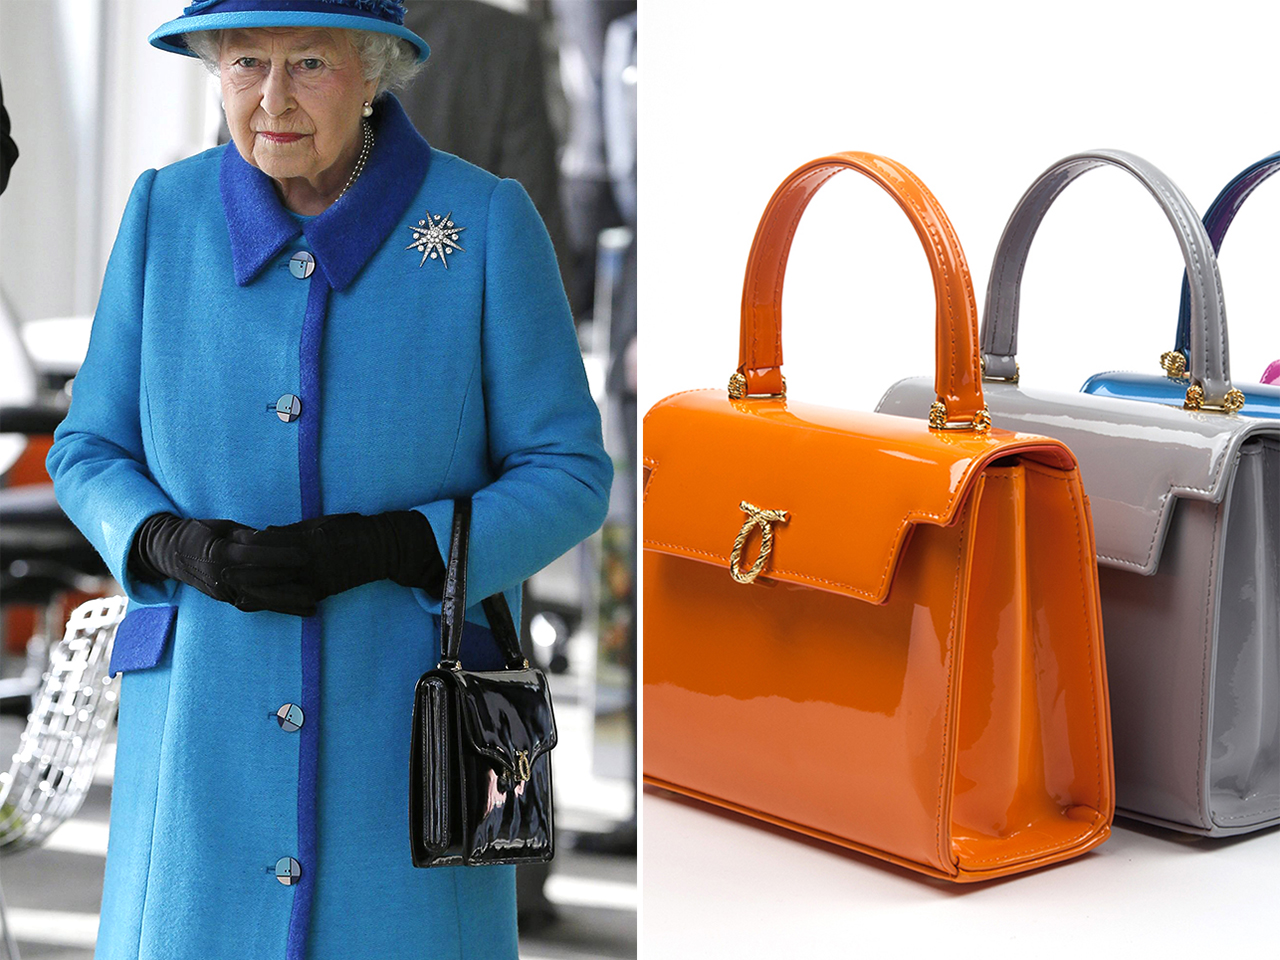 Bolsos y monederos Bolsos de mano Bolsos clutch y de fiesta jubilee bag Queen Bag royal bag Elizabeth II bag queen elizabeth pop art 